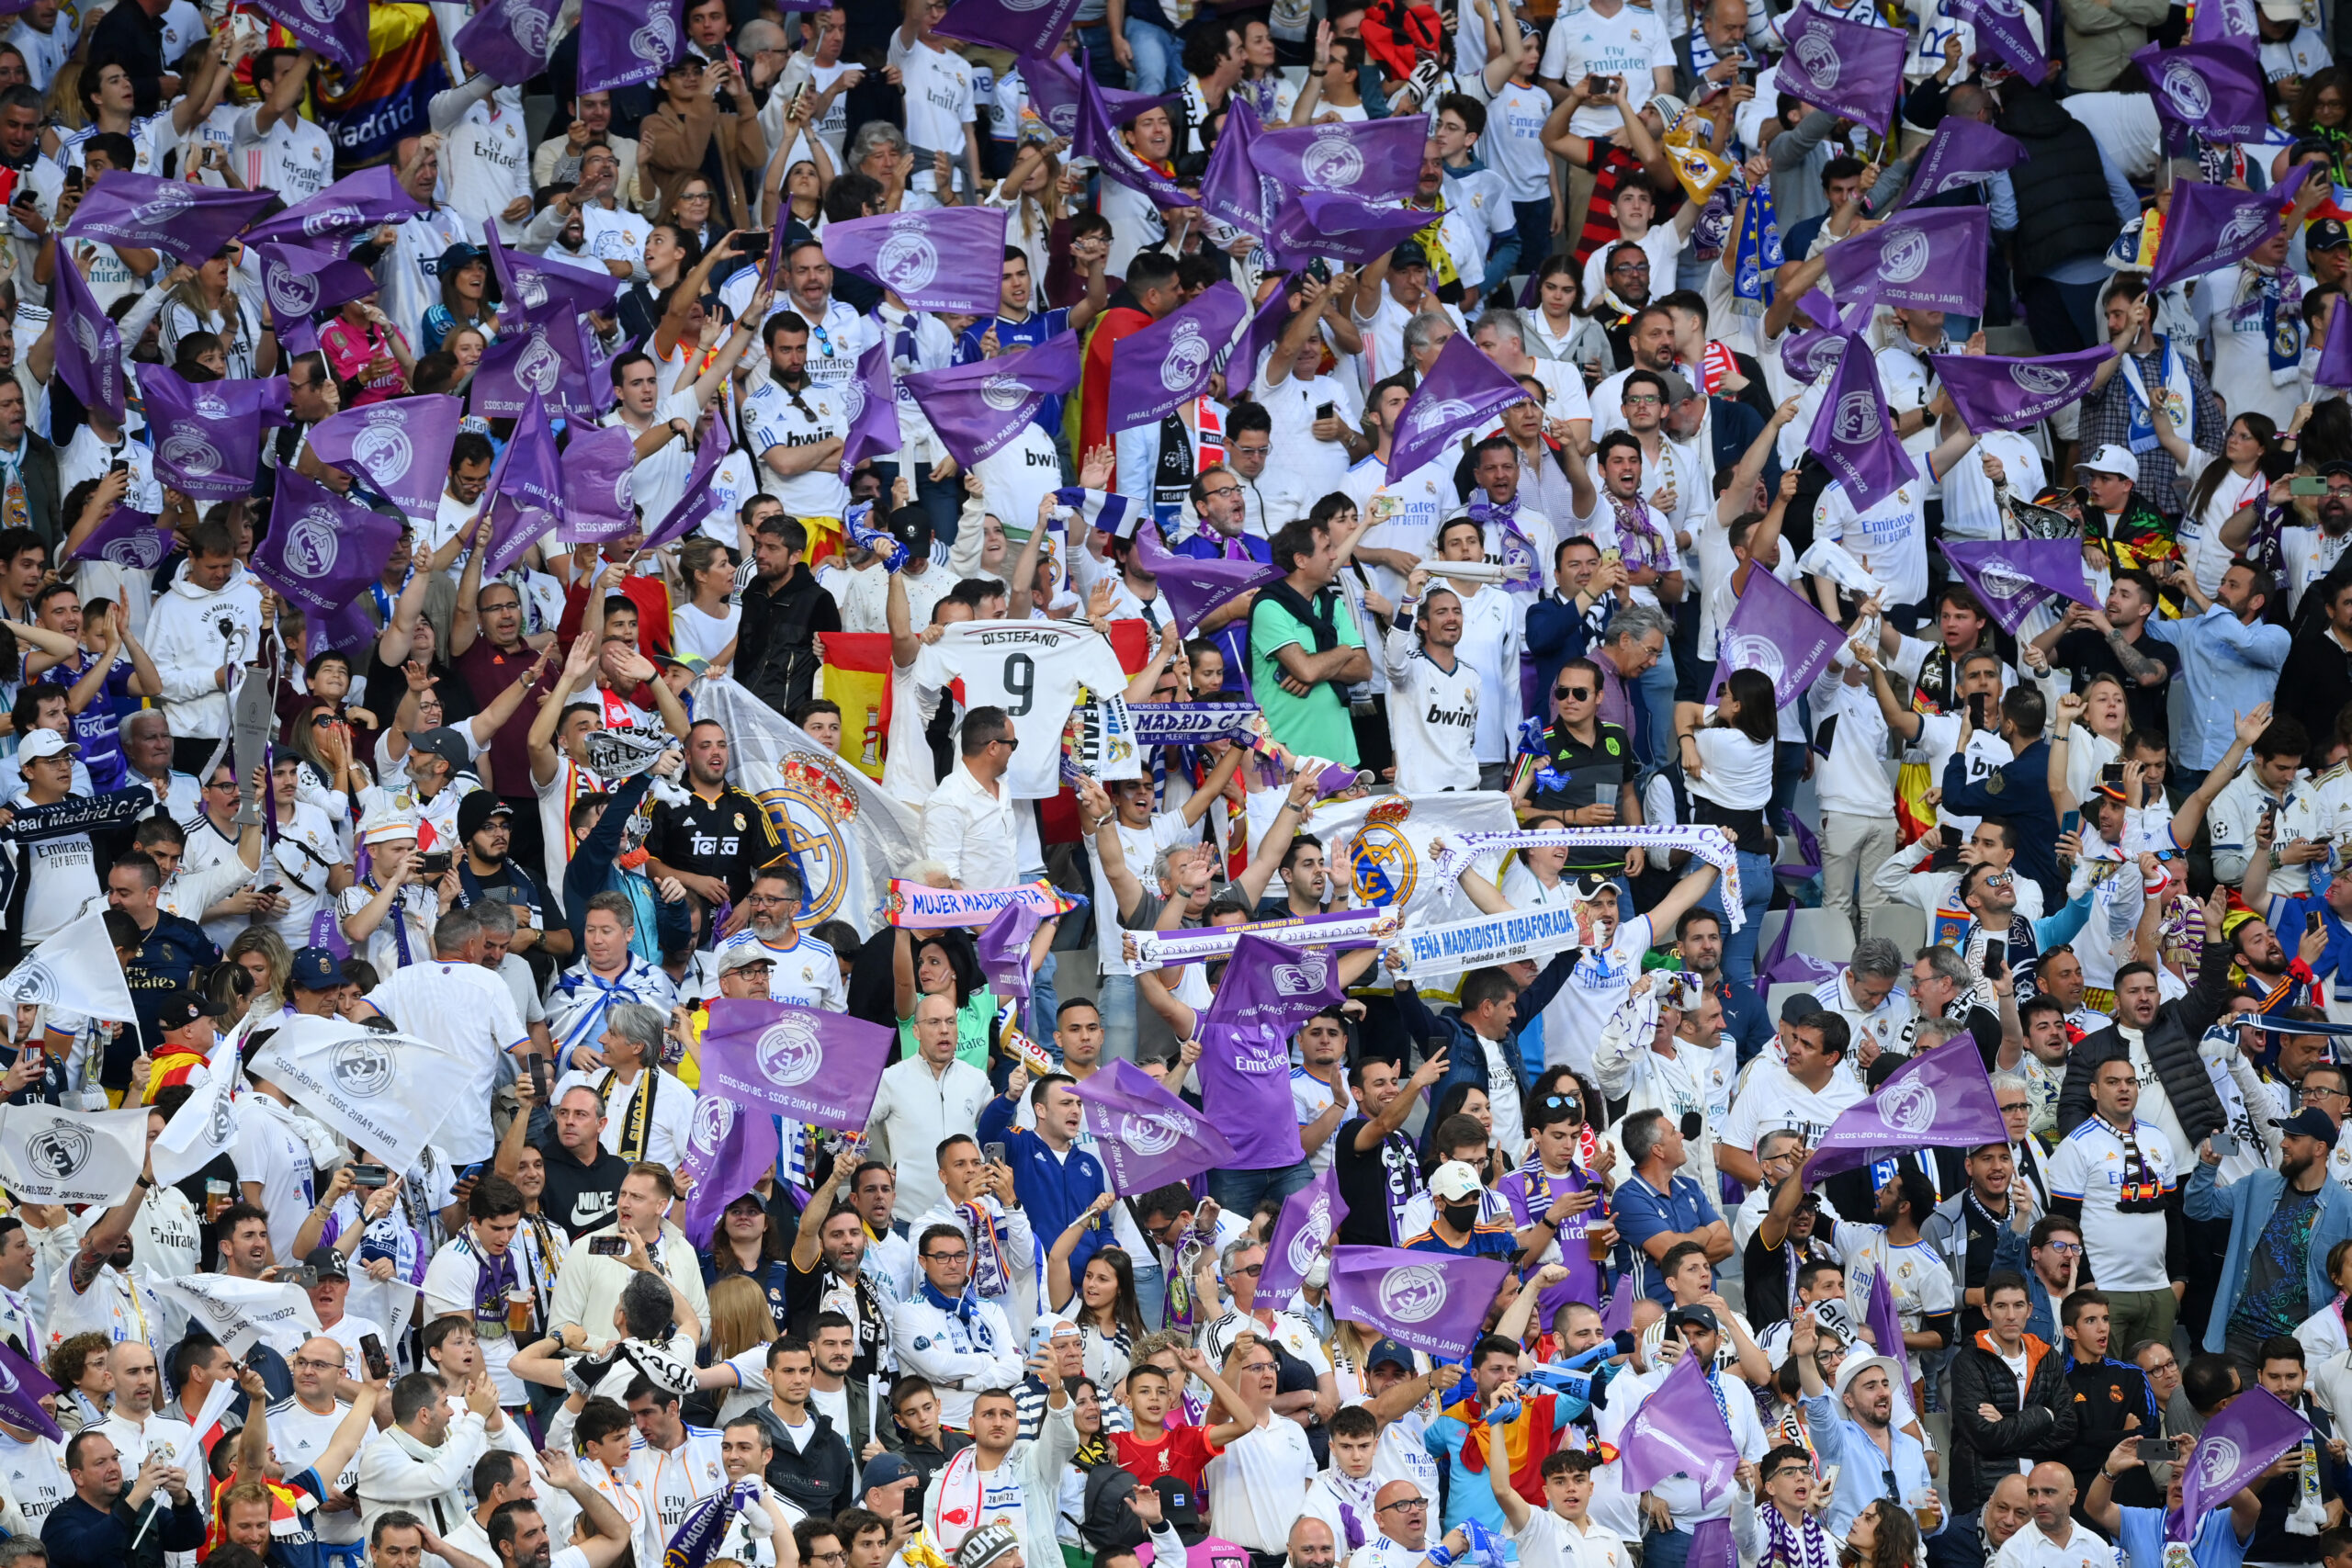 Finale Champions League, disordini a Parigi: “Gas lacrimogeni fuori dallo stadio, organizzazione indegna!”